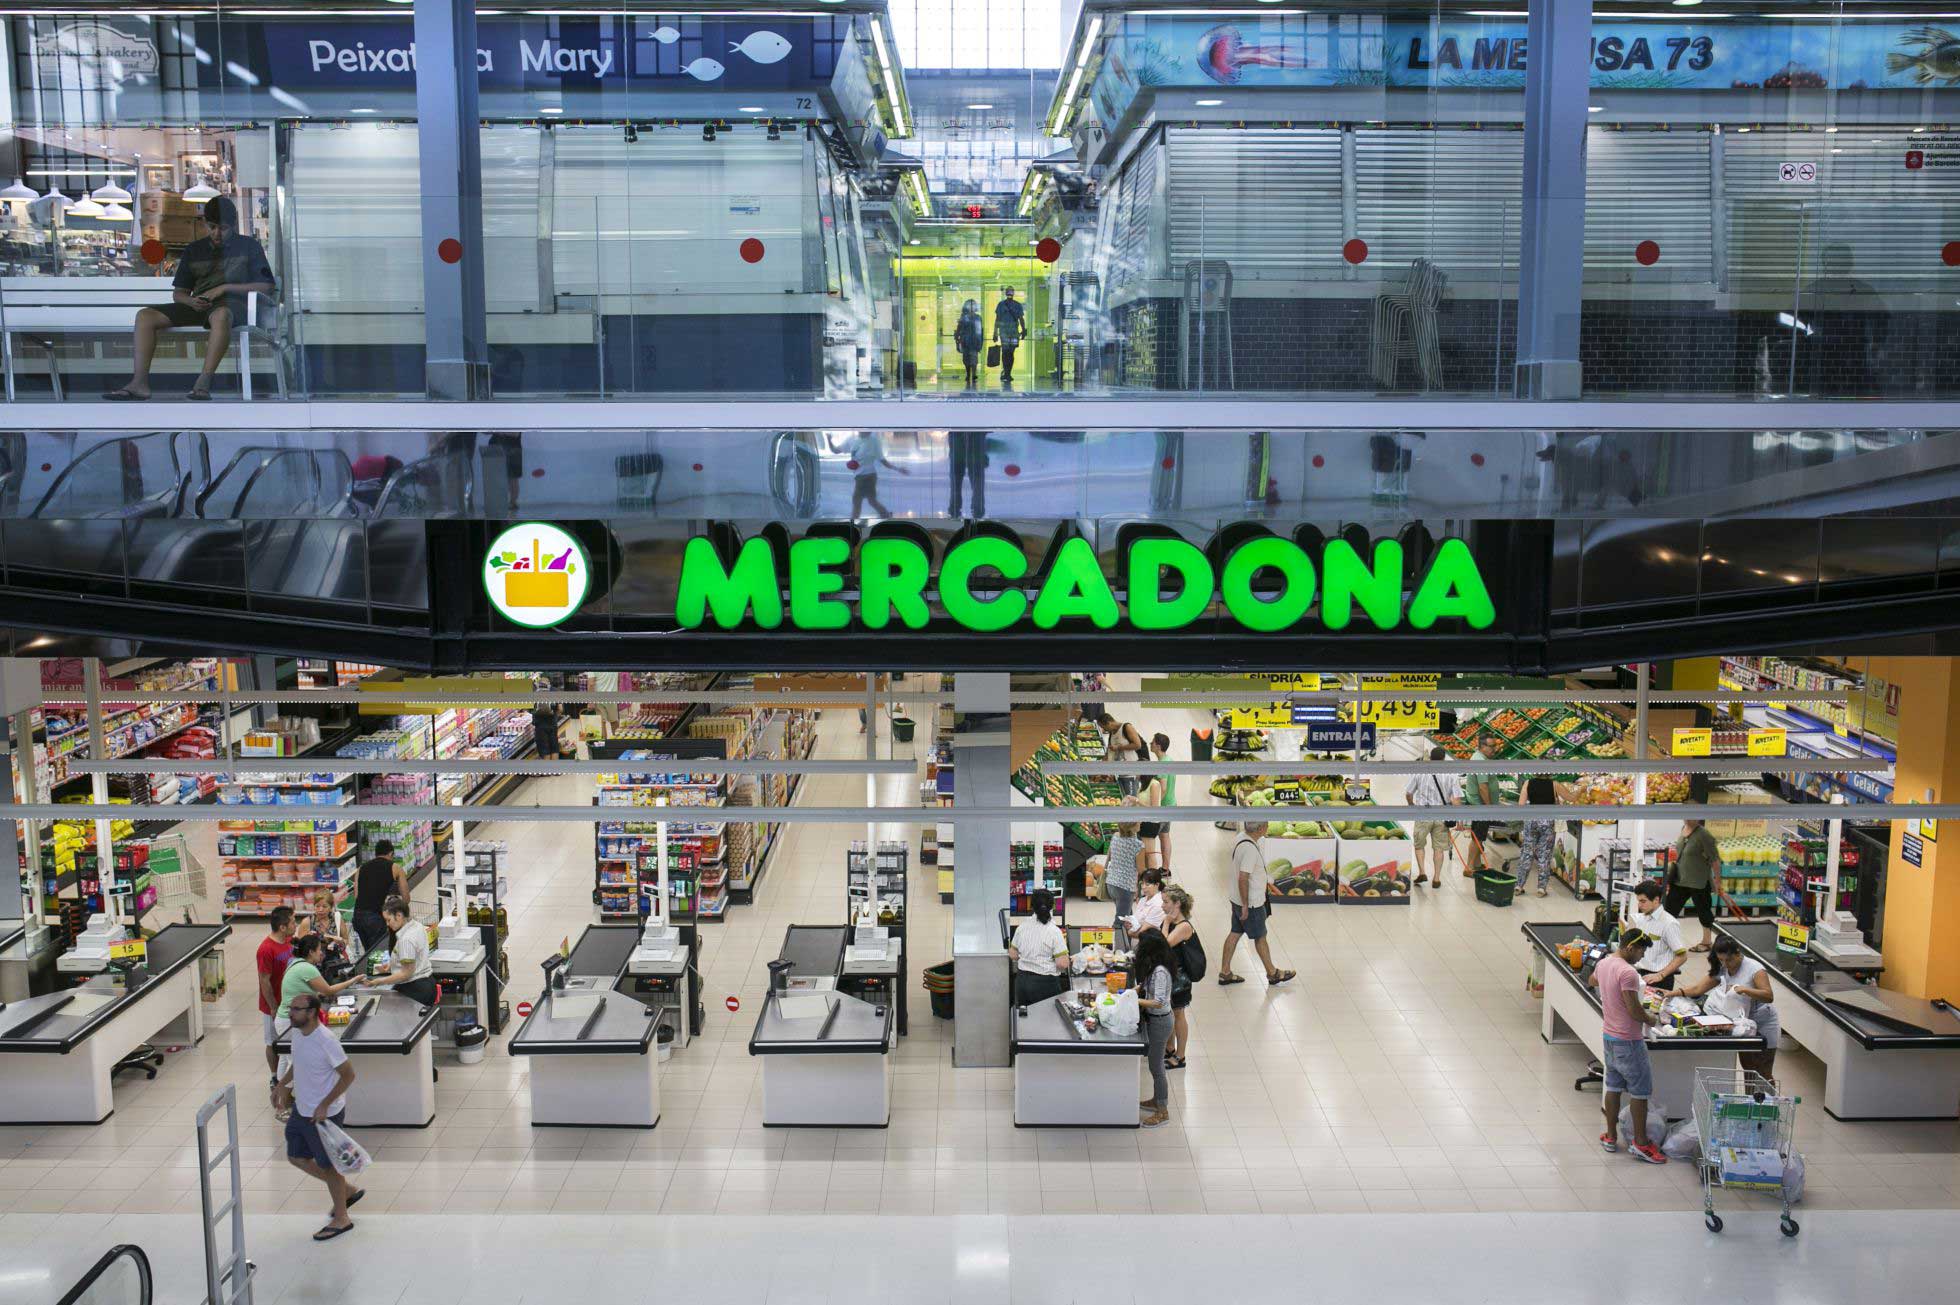 Economic impact of Mercadona